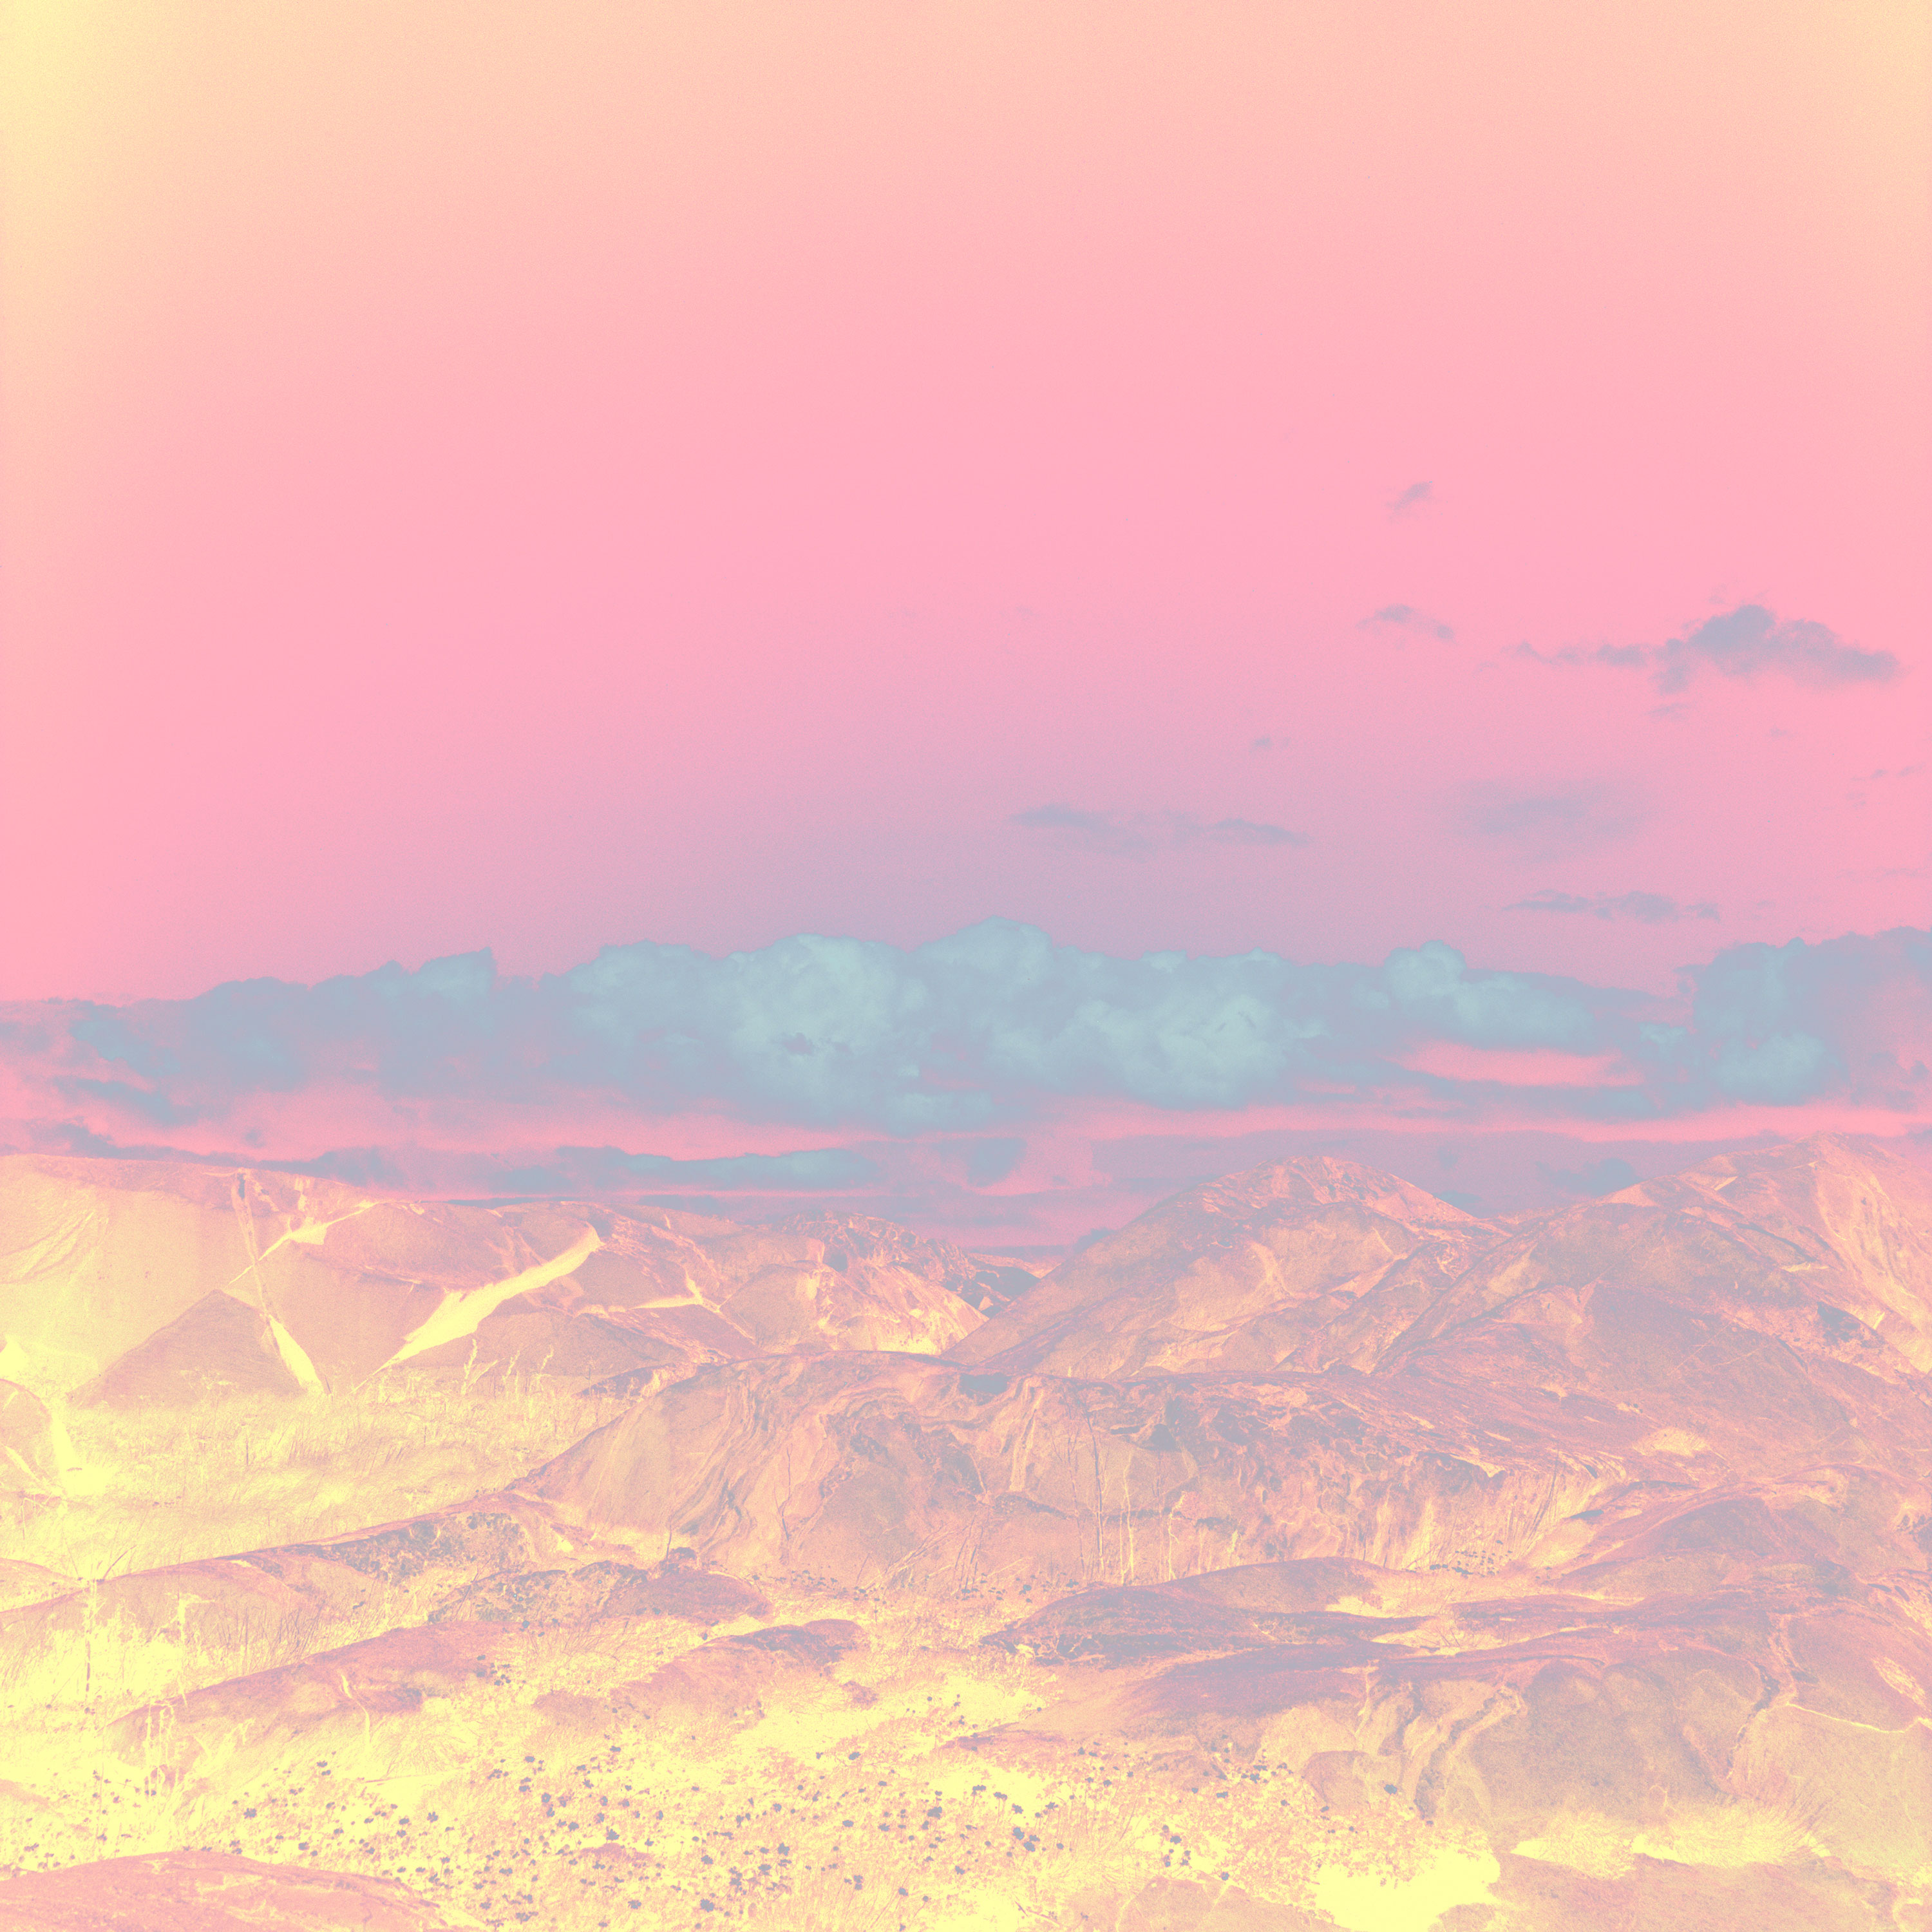 fotografi av bergslandskap med skarpt rosa himmel och gula och röda färger för berg